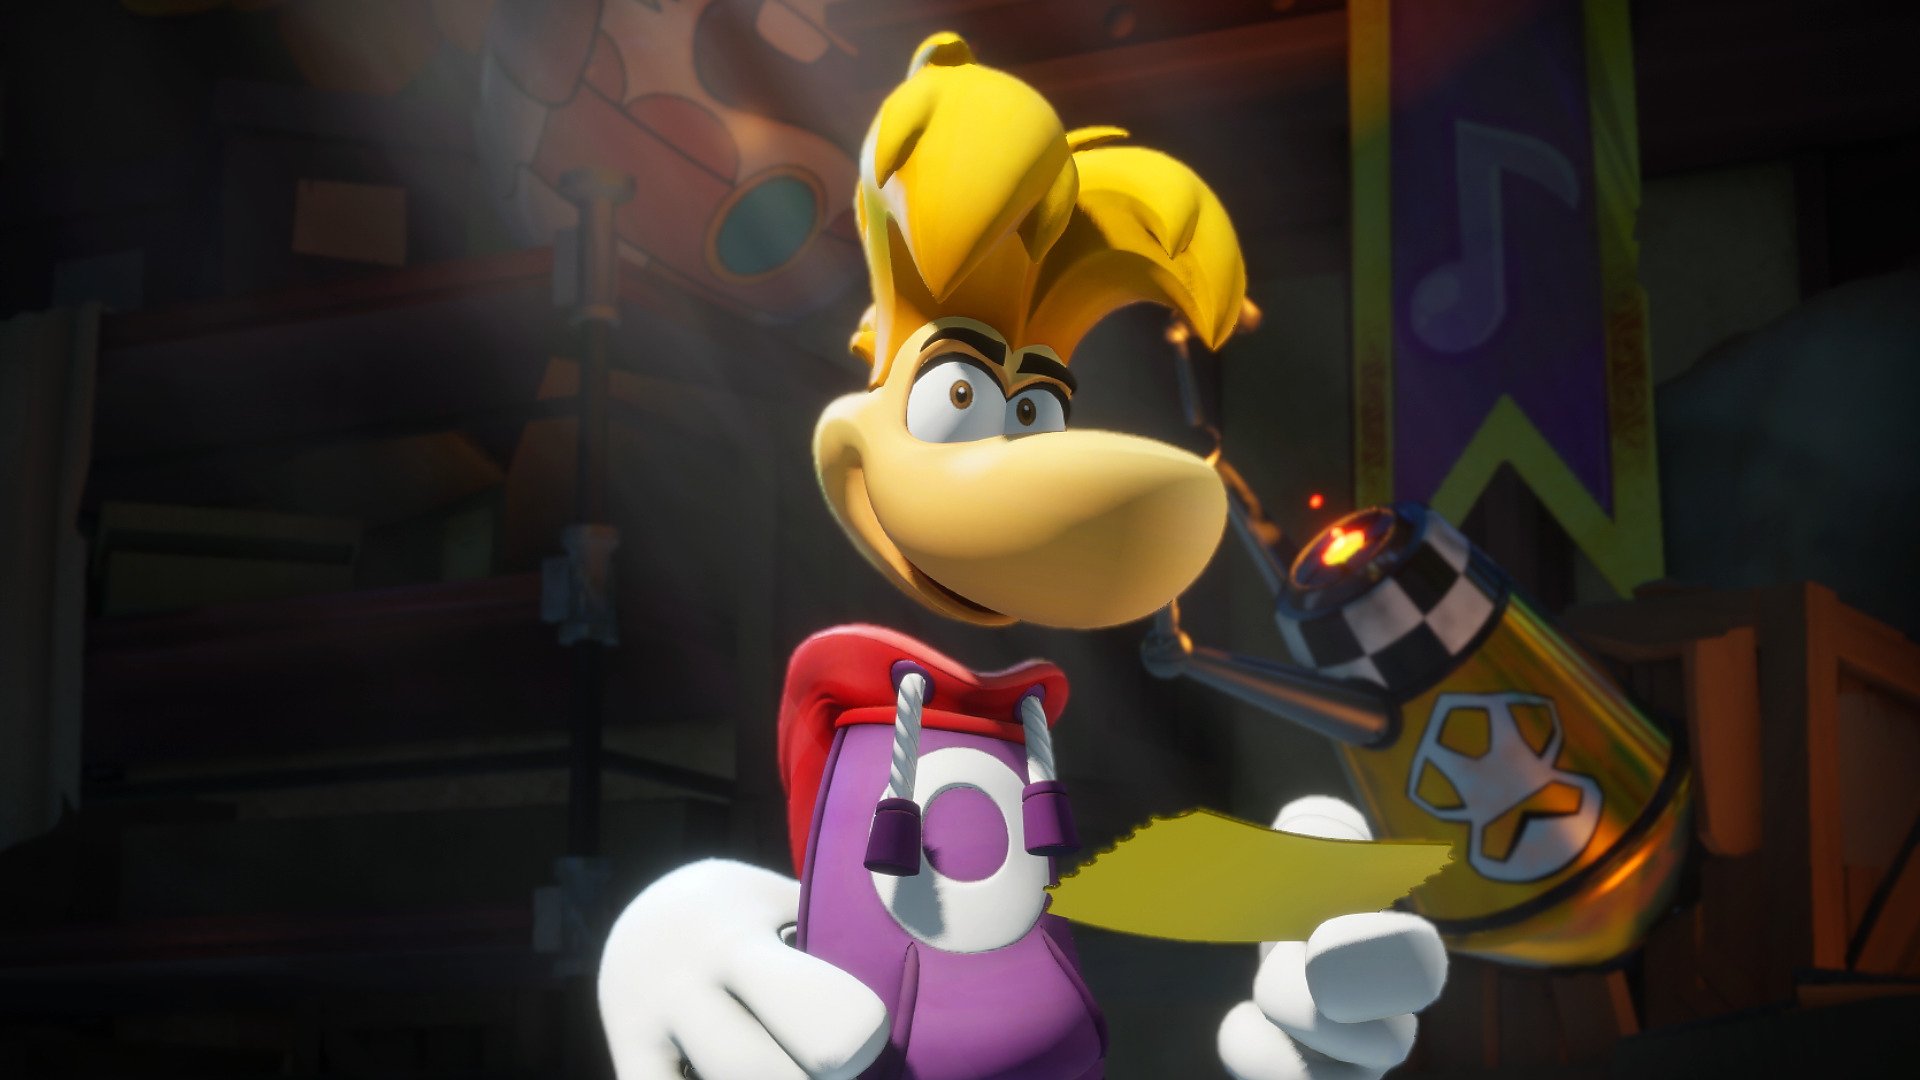 Rayman in the Phantom Show-expansionen för Mario + Rabbids Sparks of Hope släpps den 30 augusti